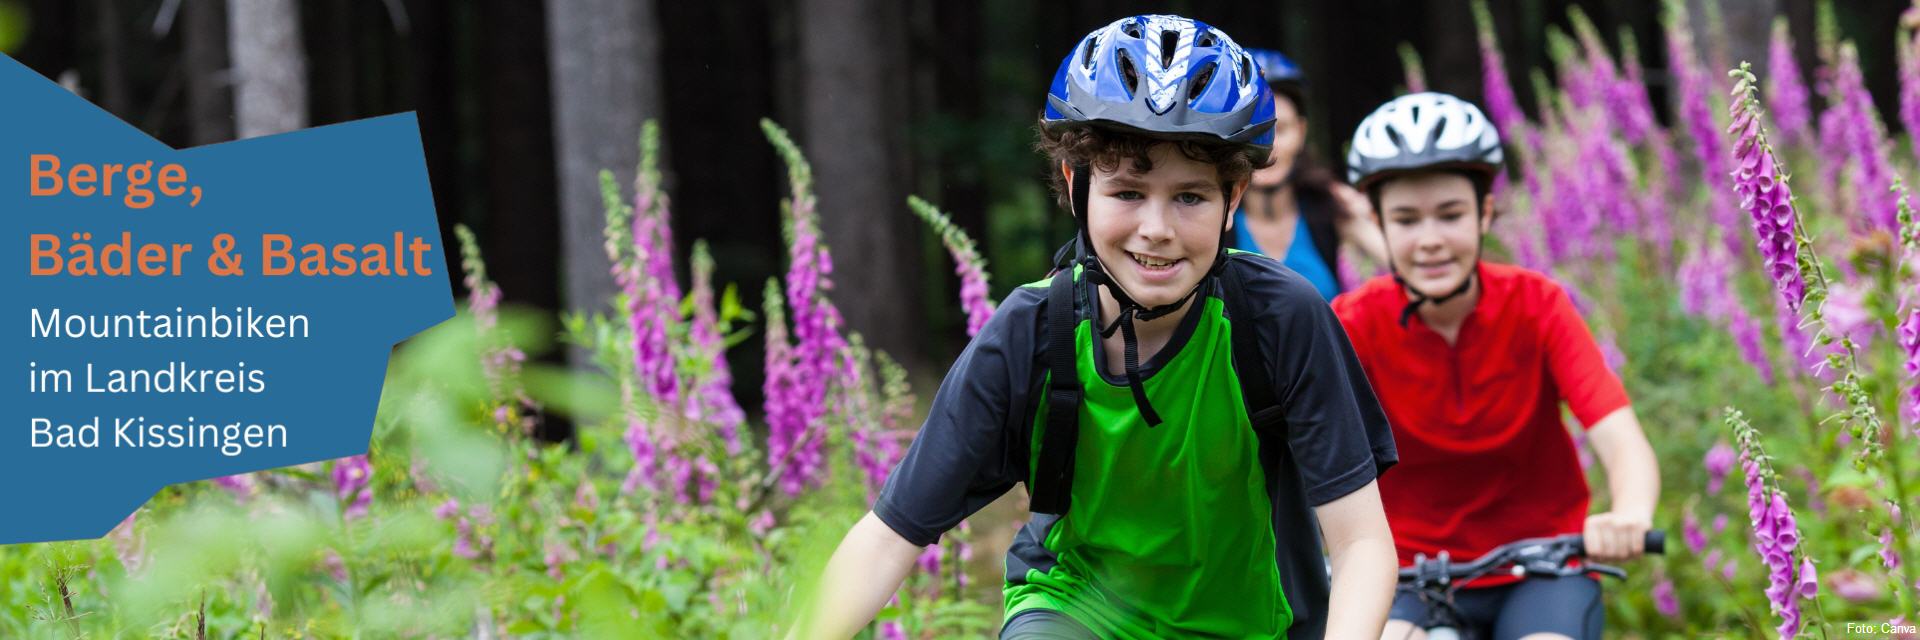 Mountainbike Strecken Touren Rhön Kinder Familie